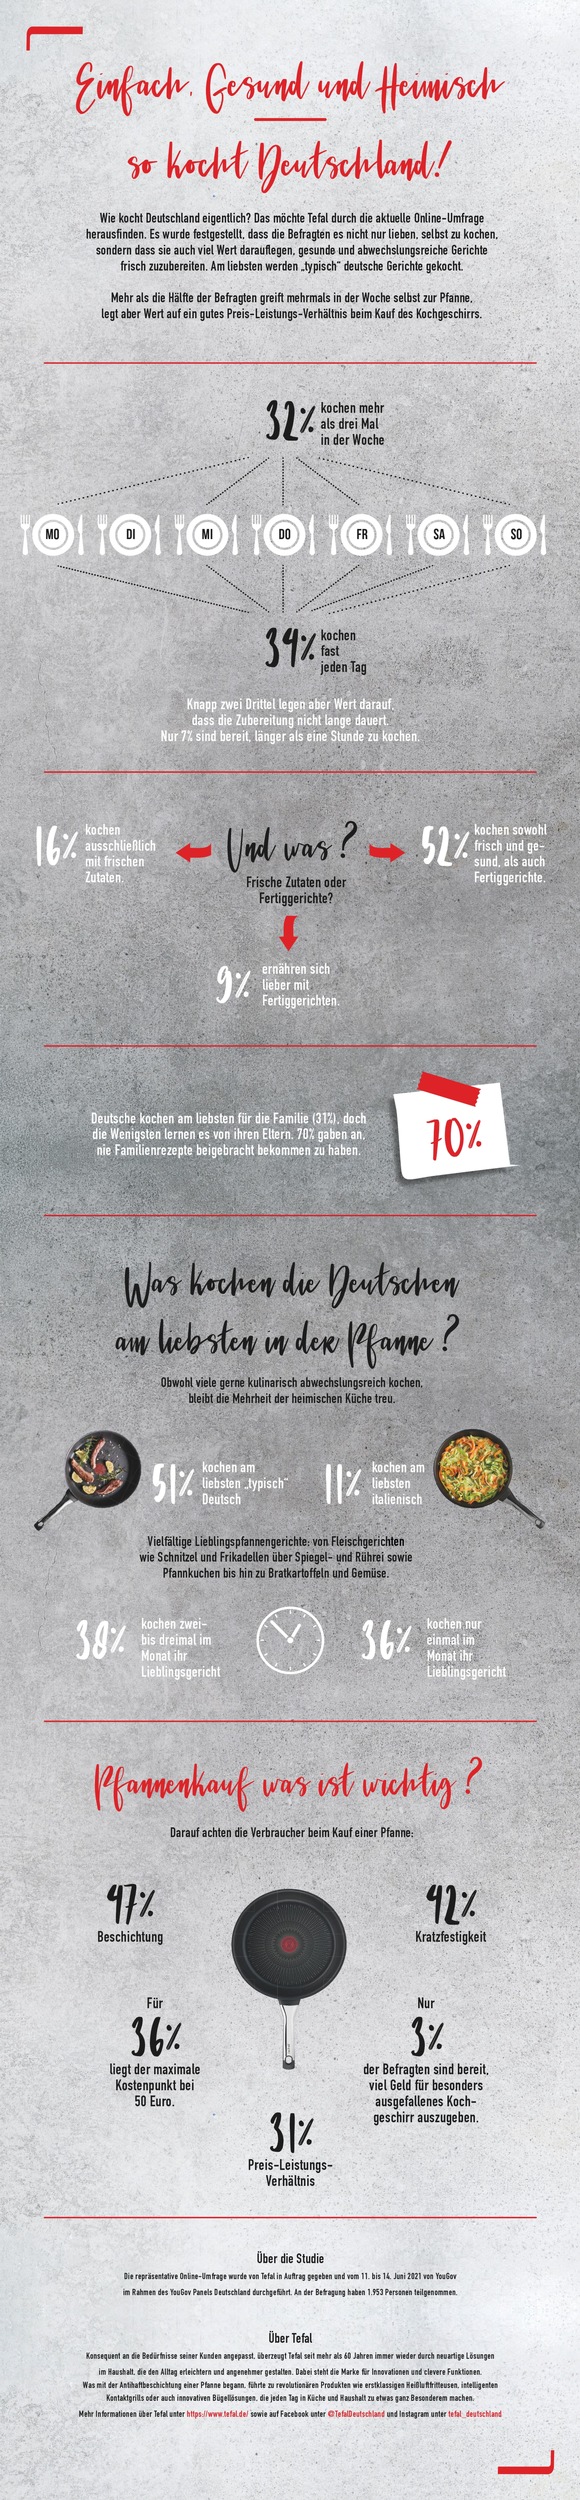 Schnell, frisch und abwechslungsreich muss es sein: So kocht Deutschland / Umfrage von Tefal zeigt: 34 Prozent der Deutschen kochen beinahe täglich frisch und legen Wert auf eine schnelle Zubereitung